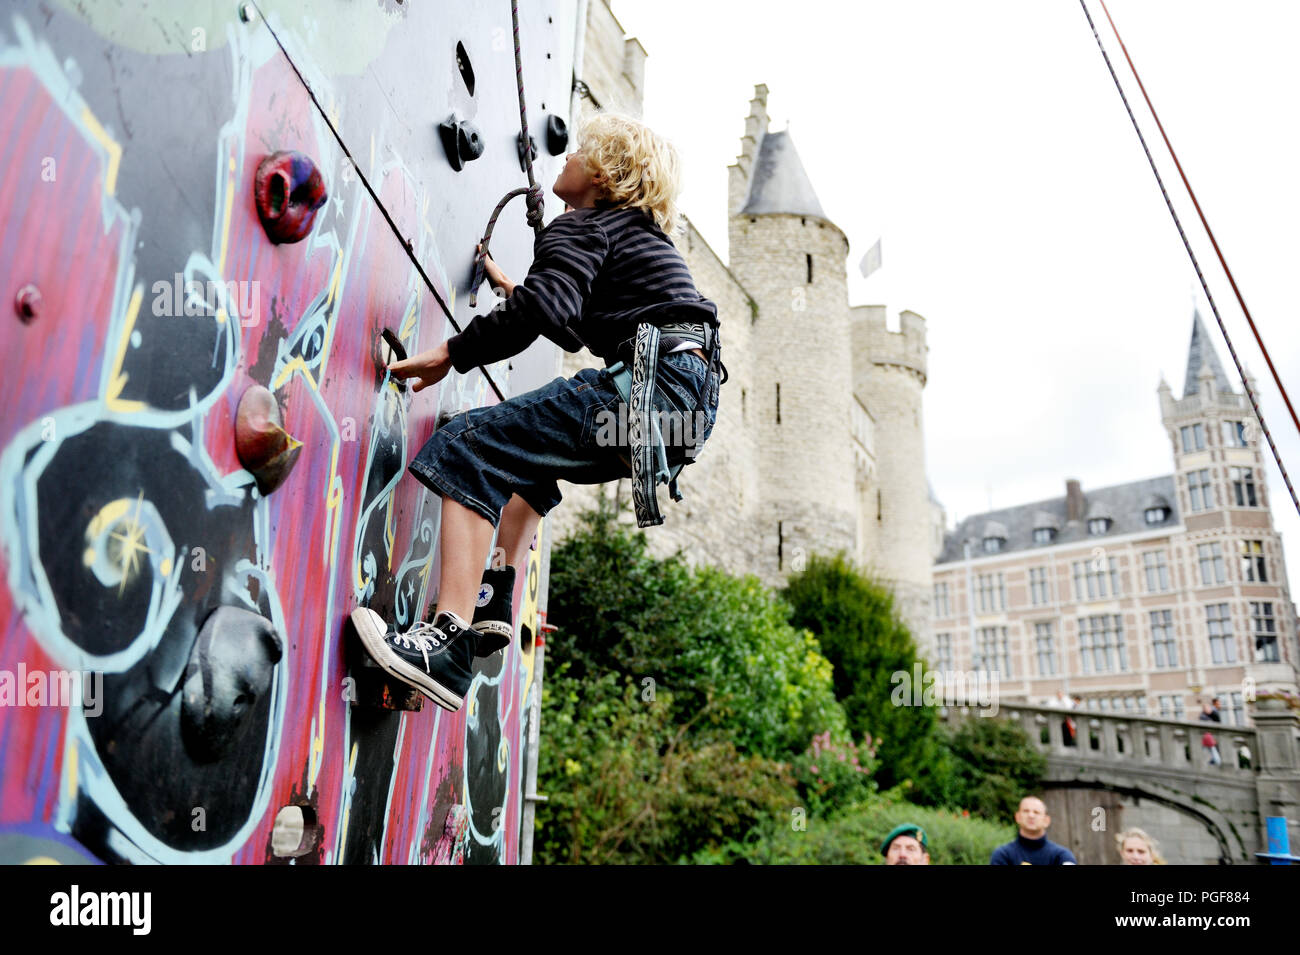 Bevrijdingsfeesten 2008, klimmuur en deathride op het Steenplein (Antwerpen, 07/09/2008) Stock Photo